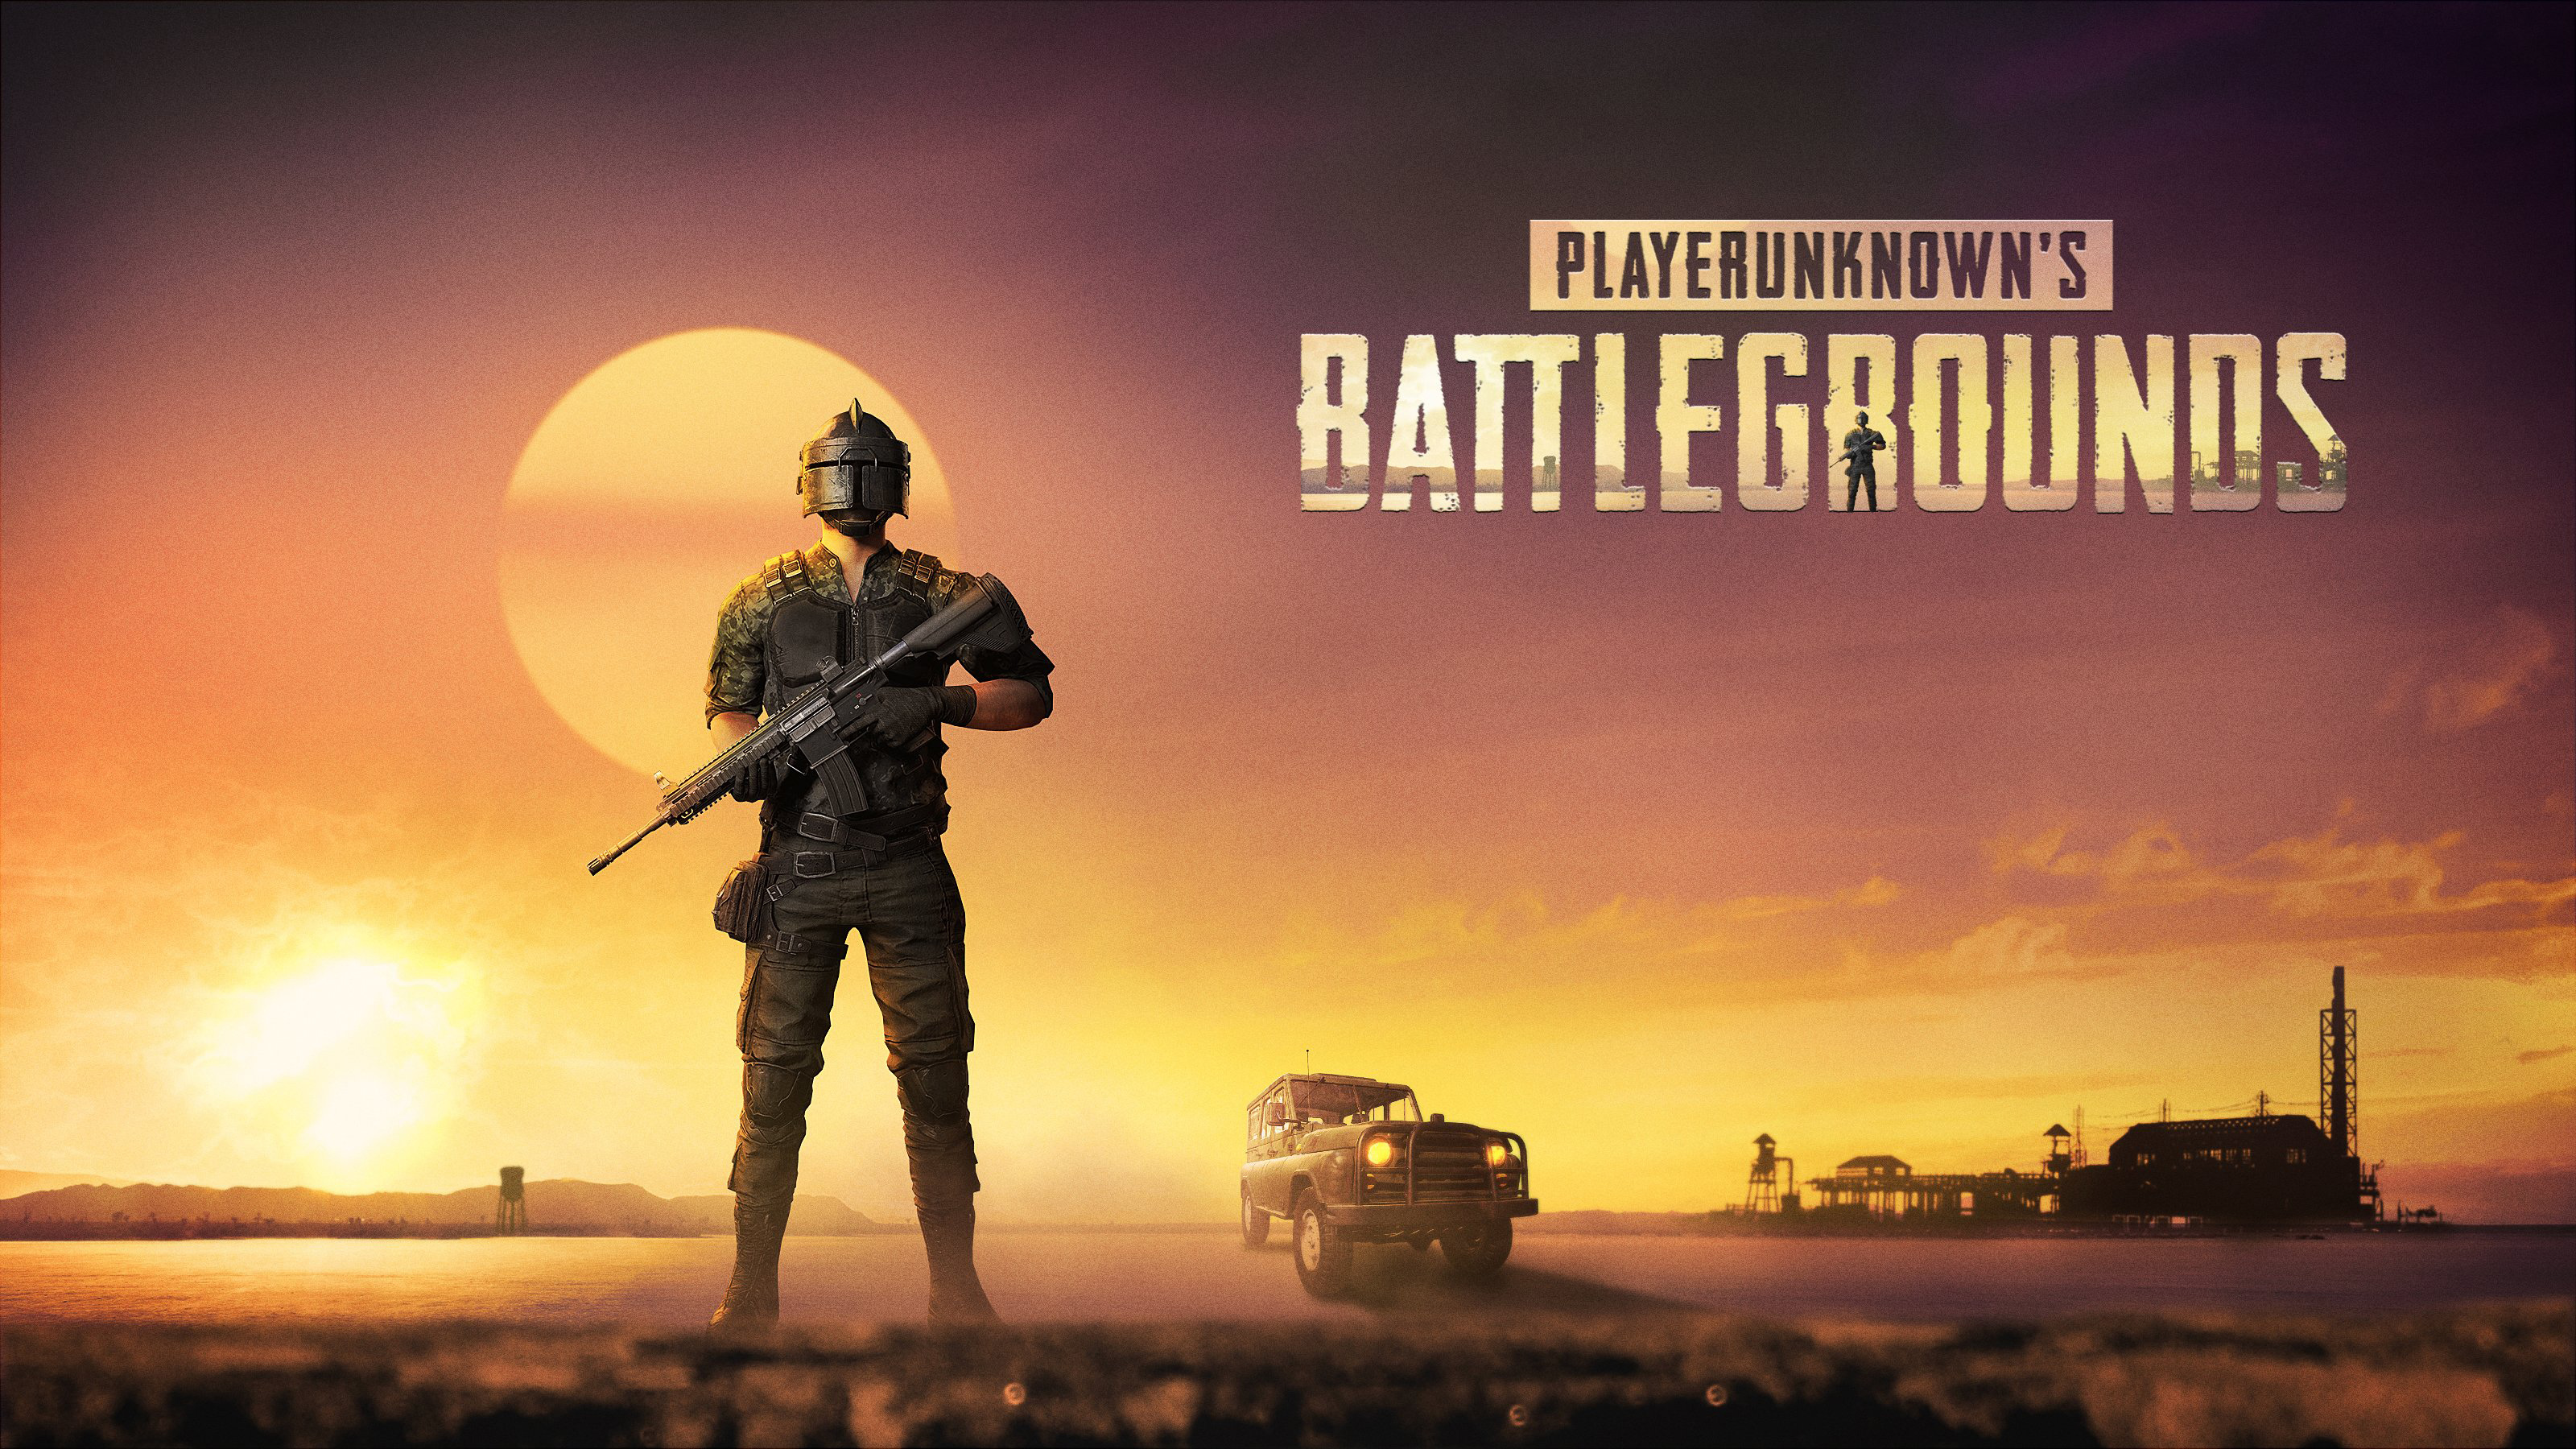 playerunknown's battlegrounds, video game, gun, helmet, m4 carbine